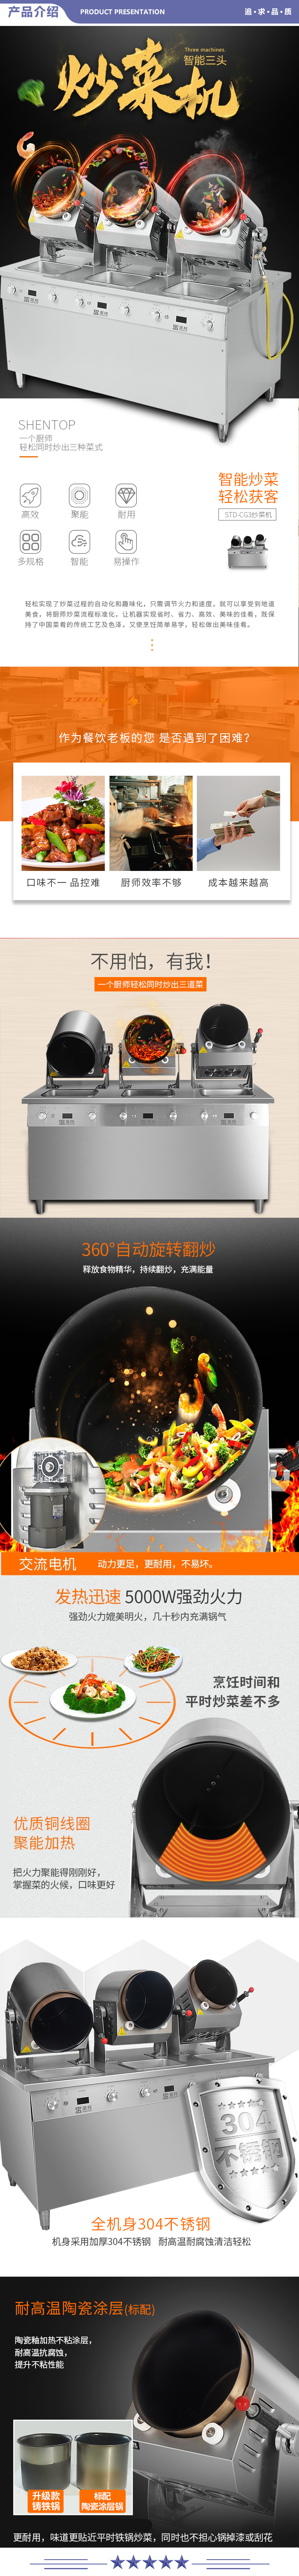 圣托（Shentop） STD-CH3 全自动炒菜机器人 懒人炒菜锅 食堂智能做饭机 8kW大功率电磁炉 2.jpg